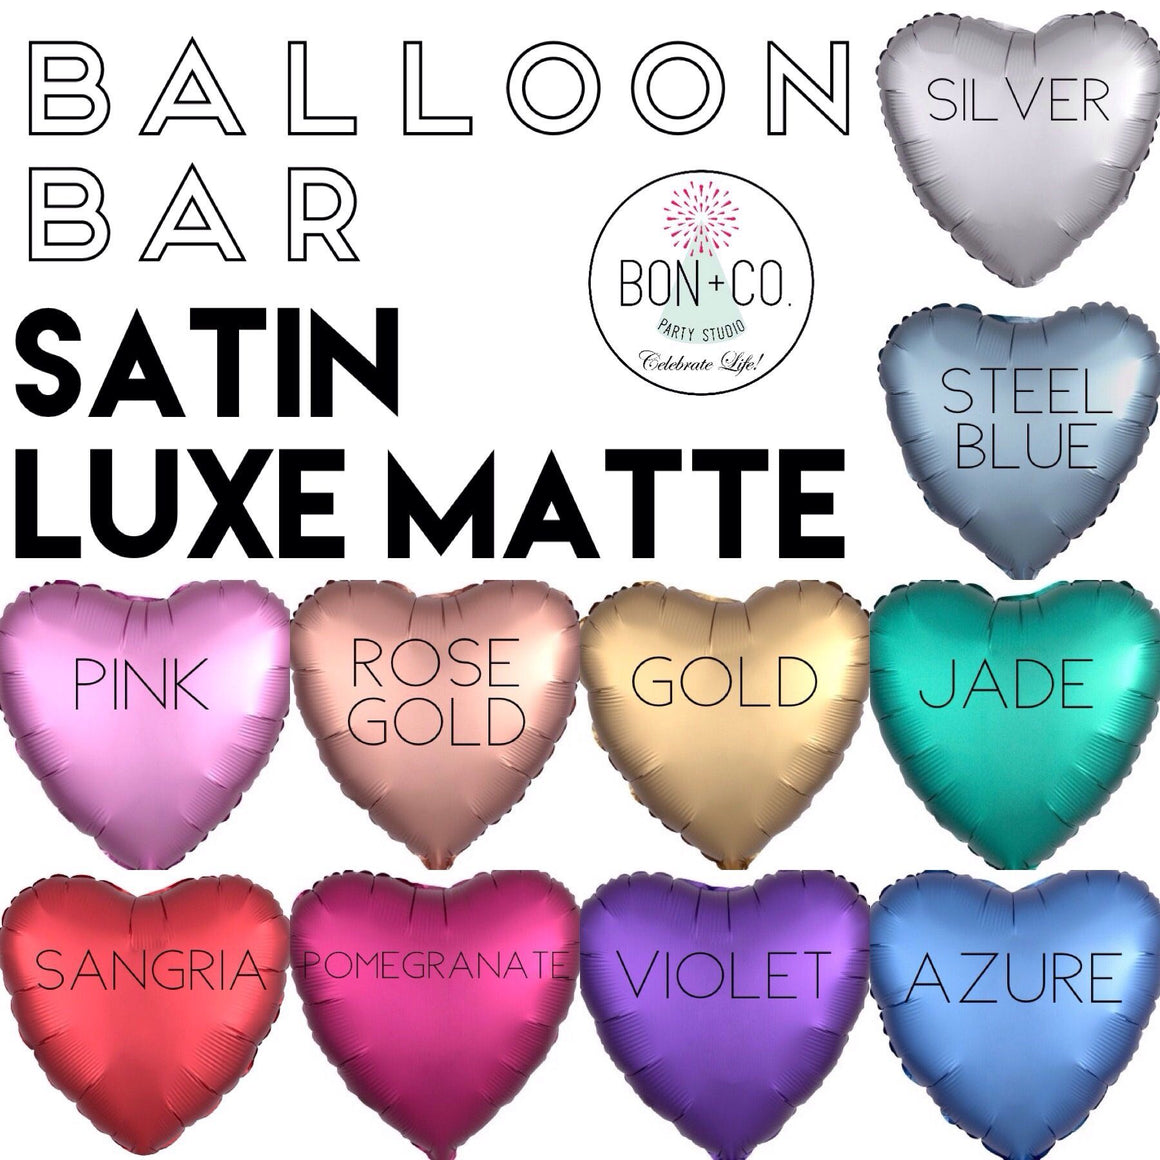 BALLOON BAR - HEART SATIN LUXE, Balloons, Anagram - Bon + Co. Party Studio